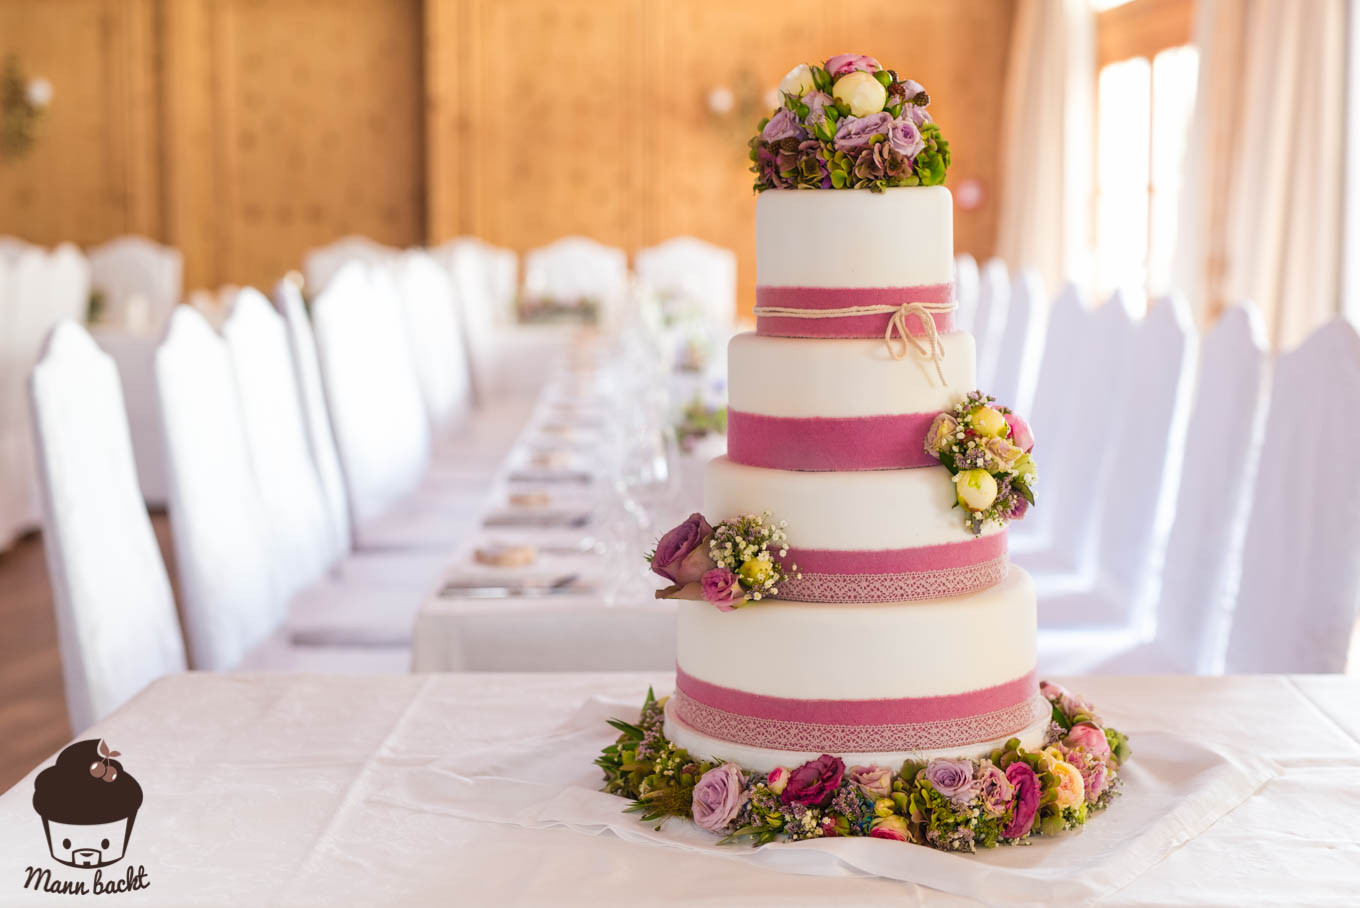 Hochzeitstorte Vintage
 Vintage Wedding Cake im Blumenmeer Mann backt